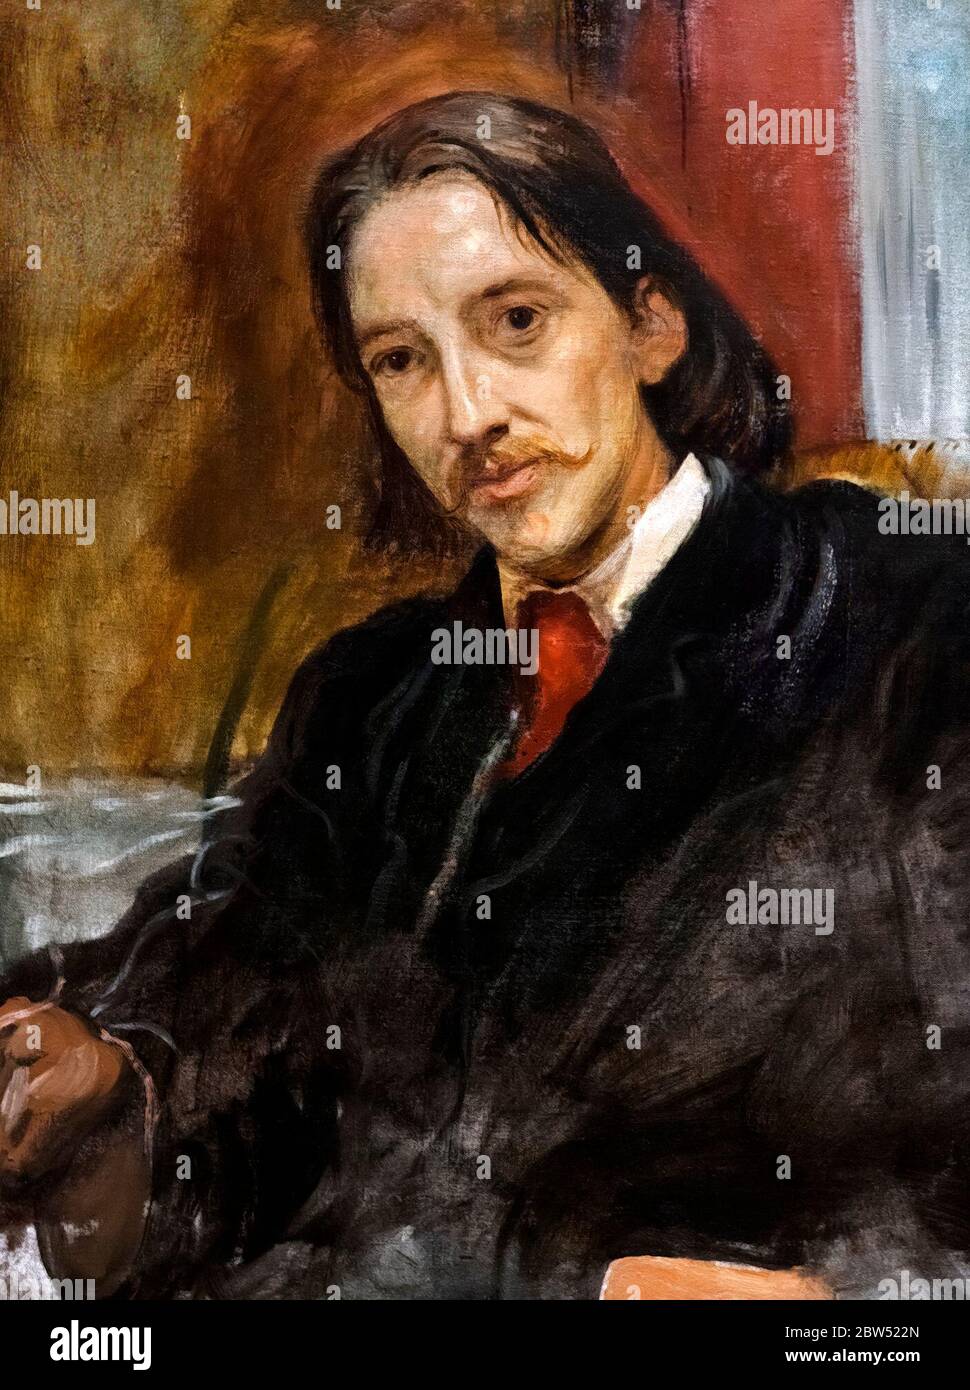 Robert Louis Stevenson. Ritratto del romanziere scozzese Robert Louis Stevenson (1850-1894), da Sir William Blake Richmond, olio su tela, 1887. Foto Stock